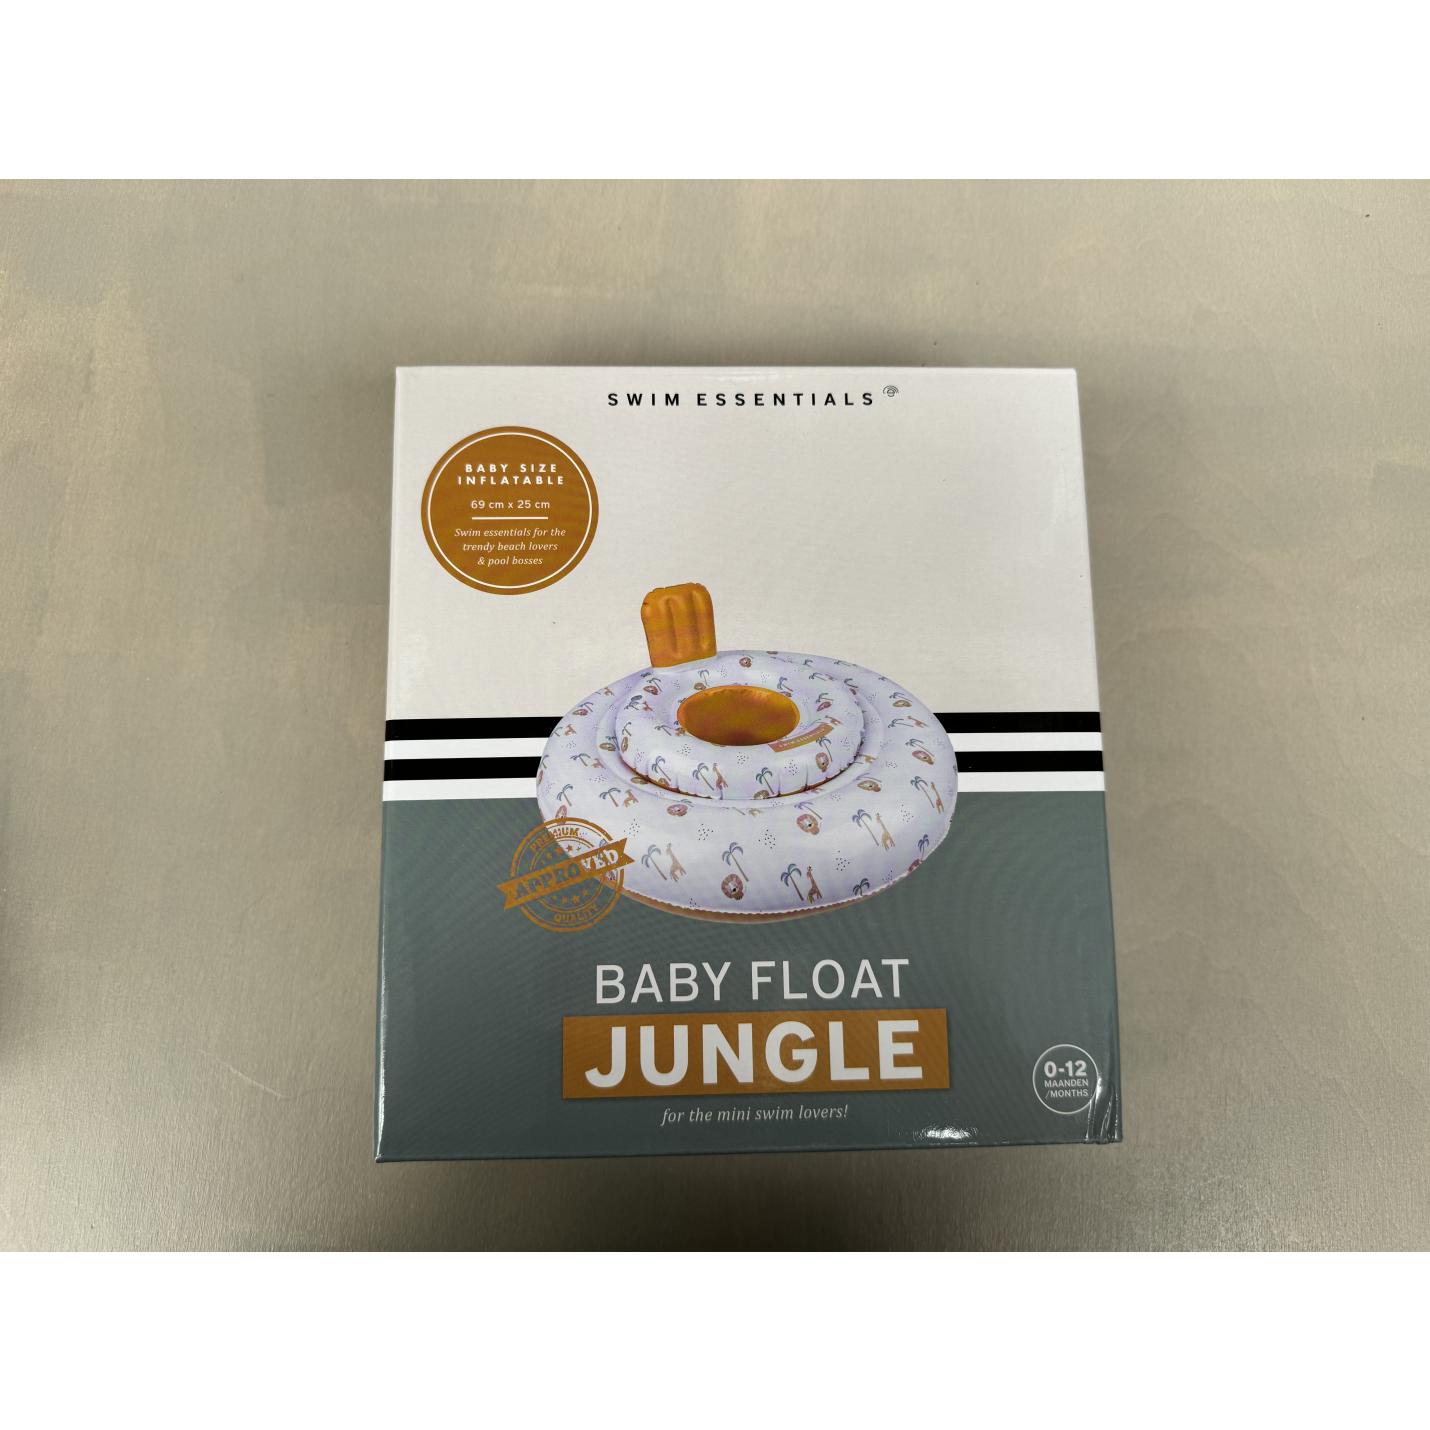 babyfloat swim essentials jungle